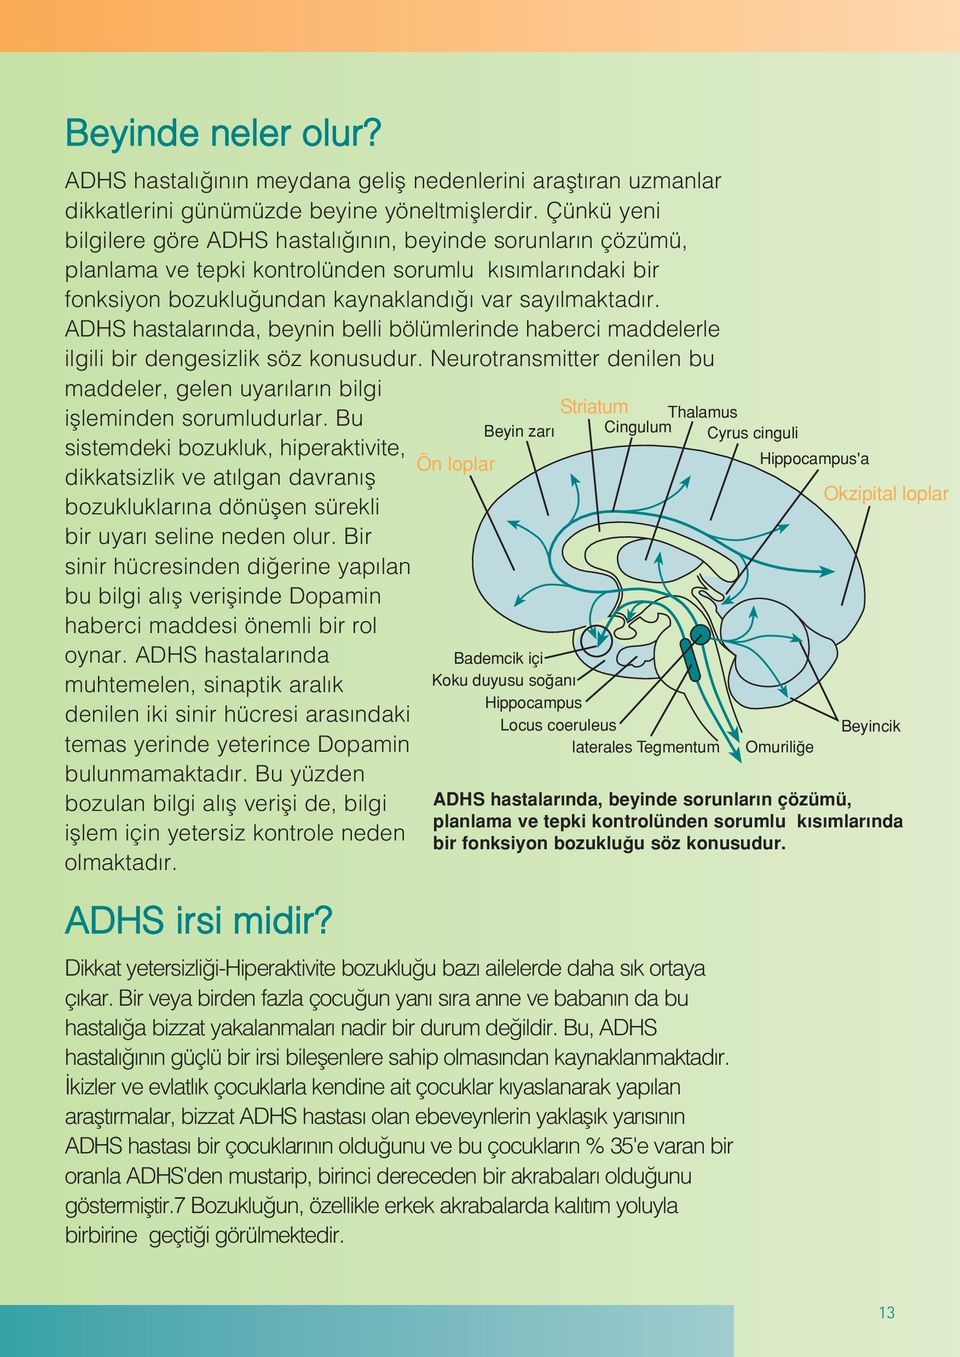 ADHS hastalar nda, beynin belli bölümlerinde haberci maddelerle ilgili bir dengesizlik söz konusudur. Neurotransmitter denilen bu maddeler, gelen uyar lar n bilgi iflleminden sorumludurlar.